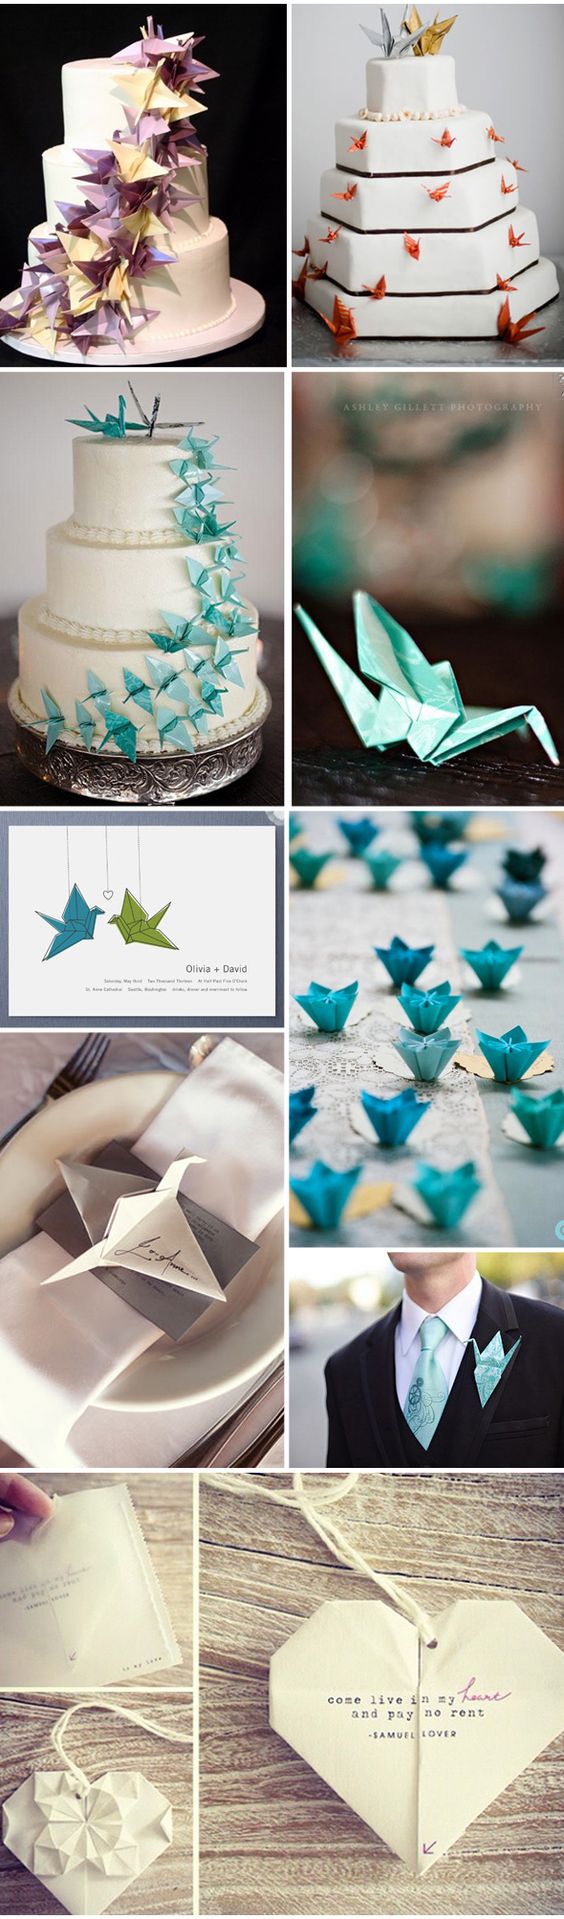 Origami Wedding Ideas